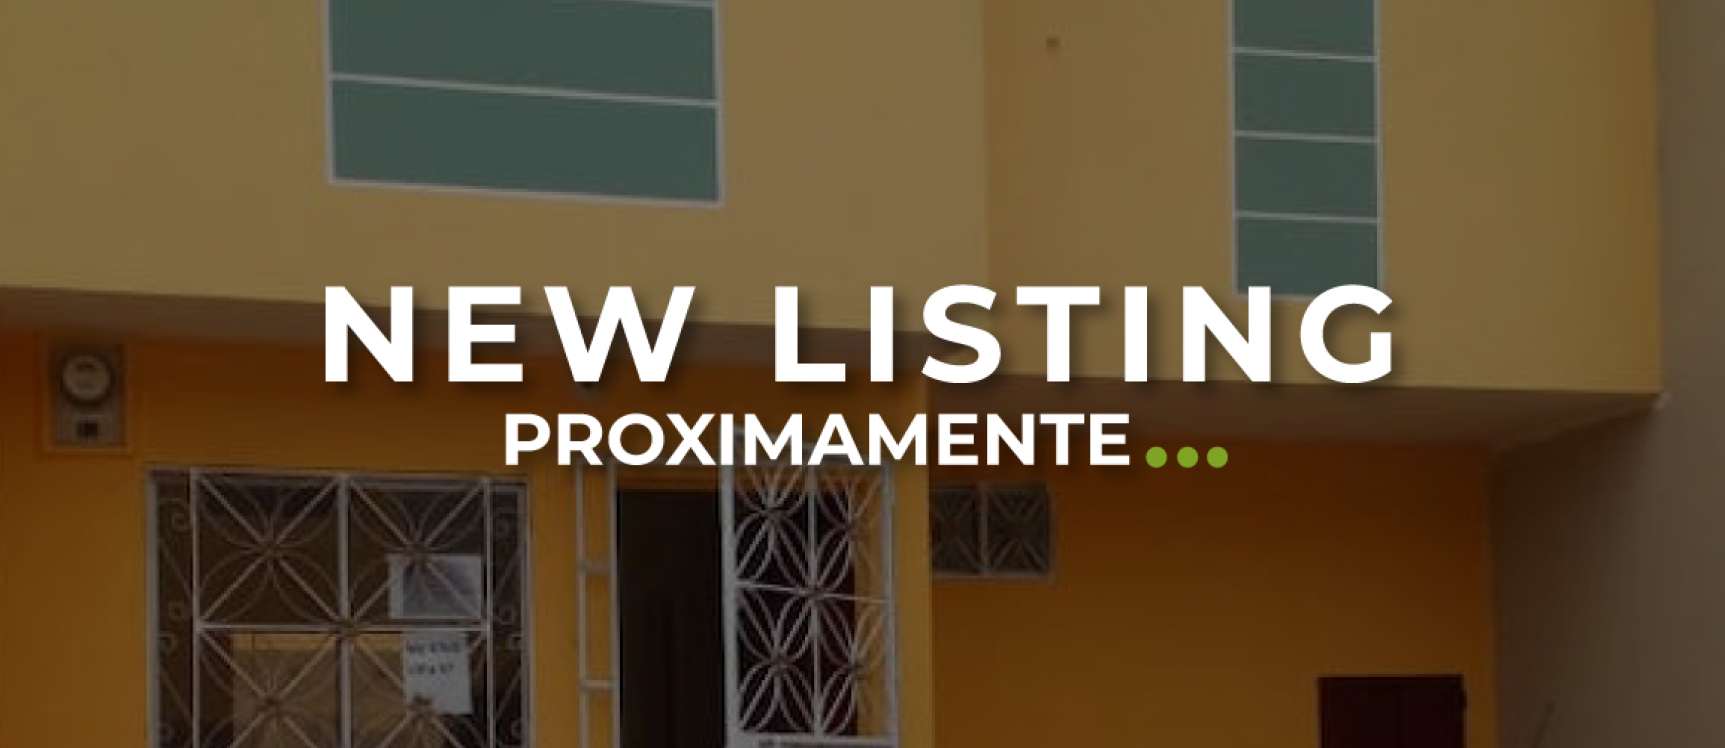 GeoBienes - Casa en alquiler ubicado en Ecobosque, Vía a Daule - Plusvalia Guayaquil Casas de venta y alquiler Inmobiliaria Ecuador